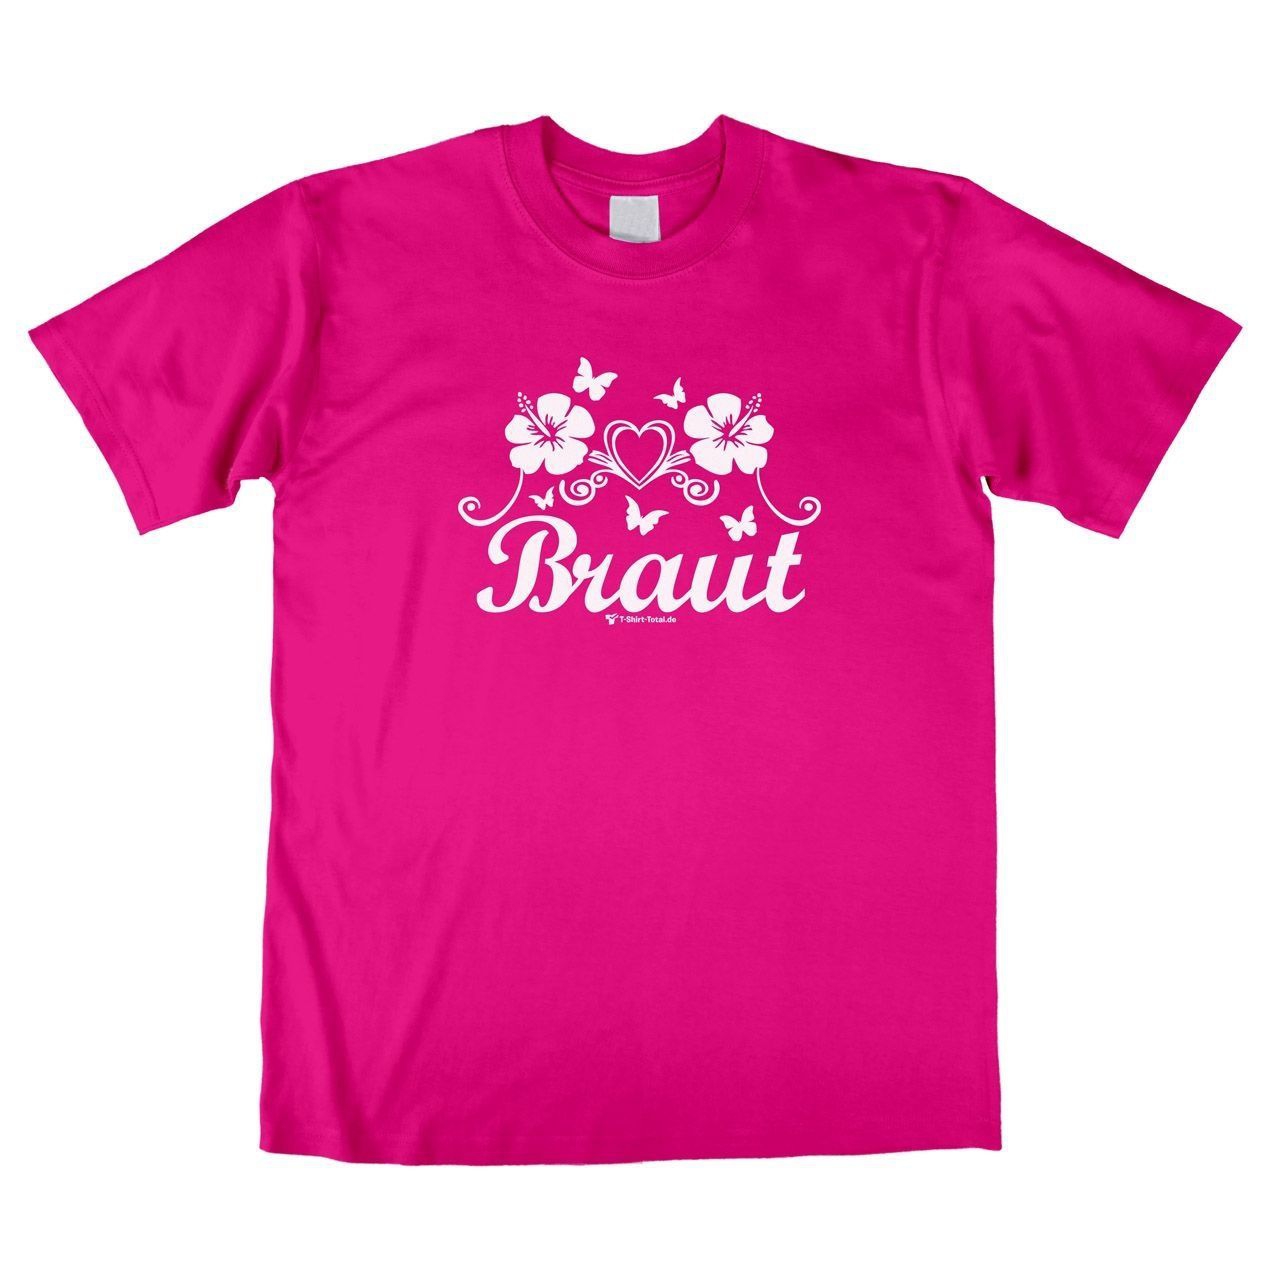 Die Braut Unisex T-Shirt pink Small